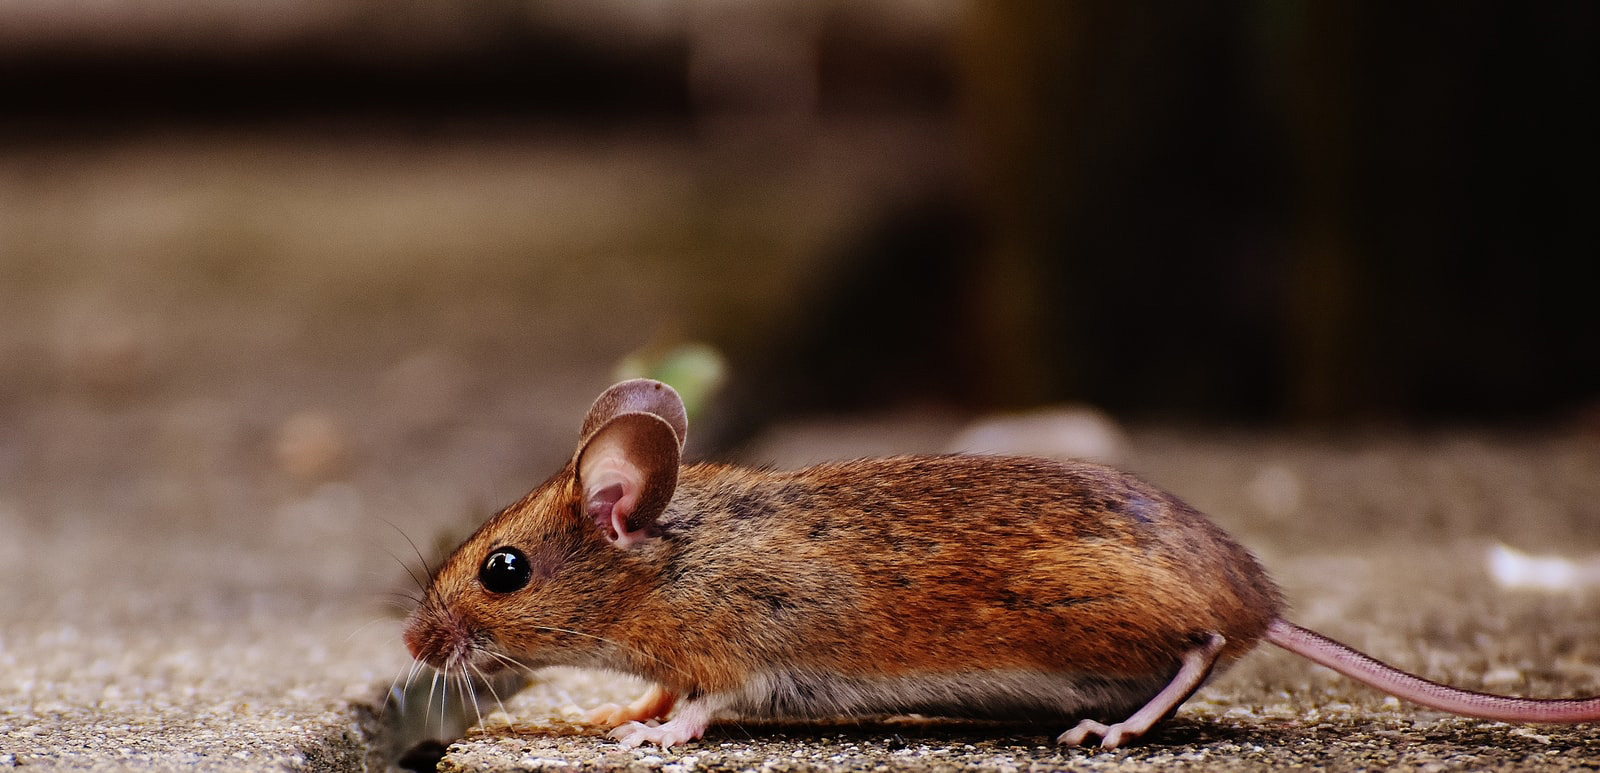 Mäuse in Haus & Garten vertreiben ▷ Hilfsmittel und Tipps